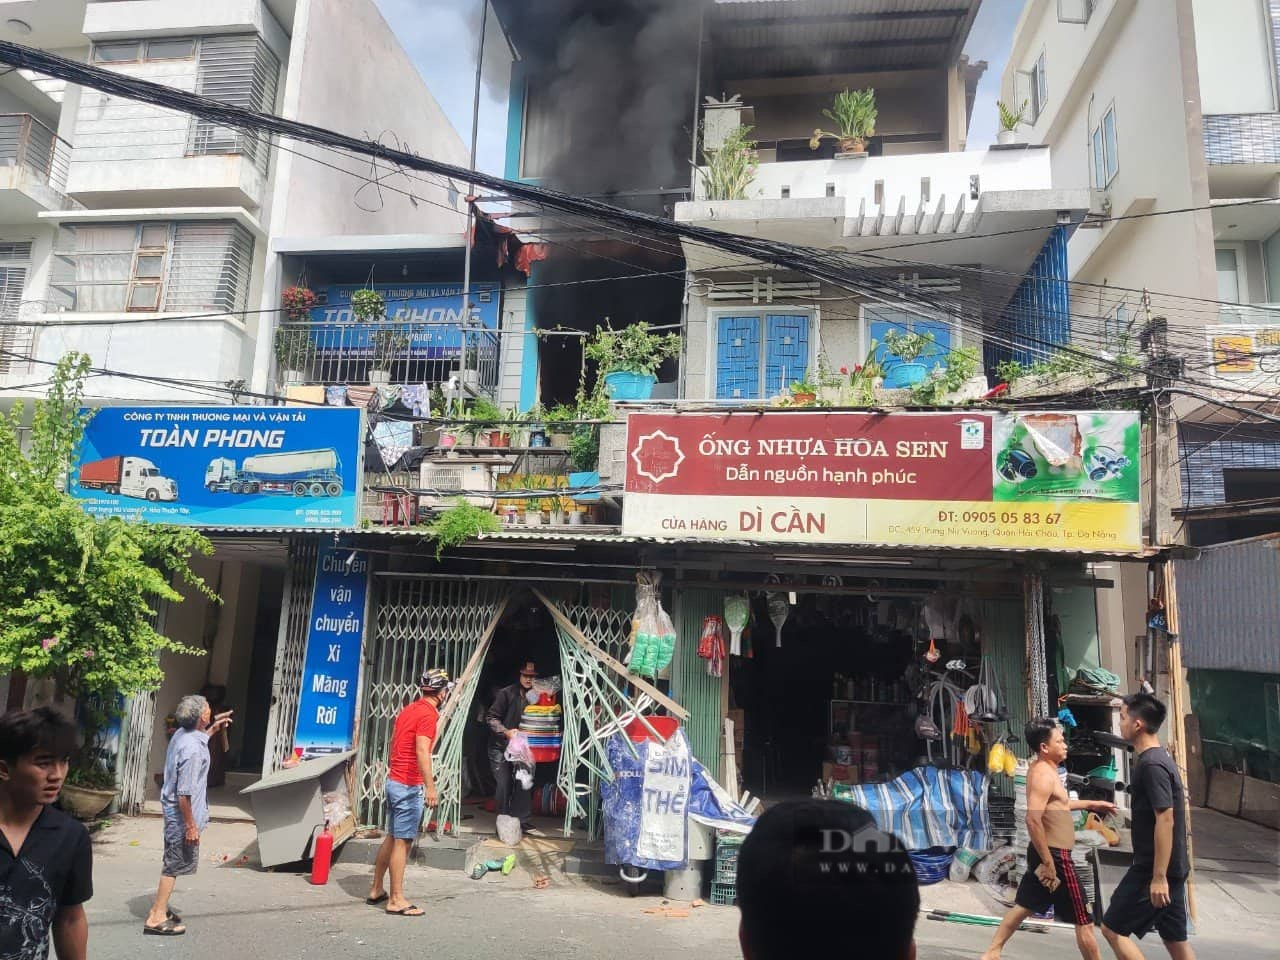 Ngôi nhà ở Đà Nẵng bốc cháy dữ dội khiến 3 người chết - Ảnh 2.